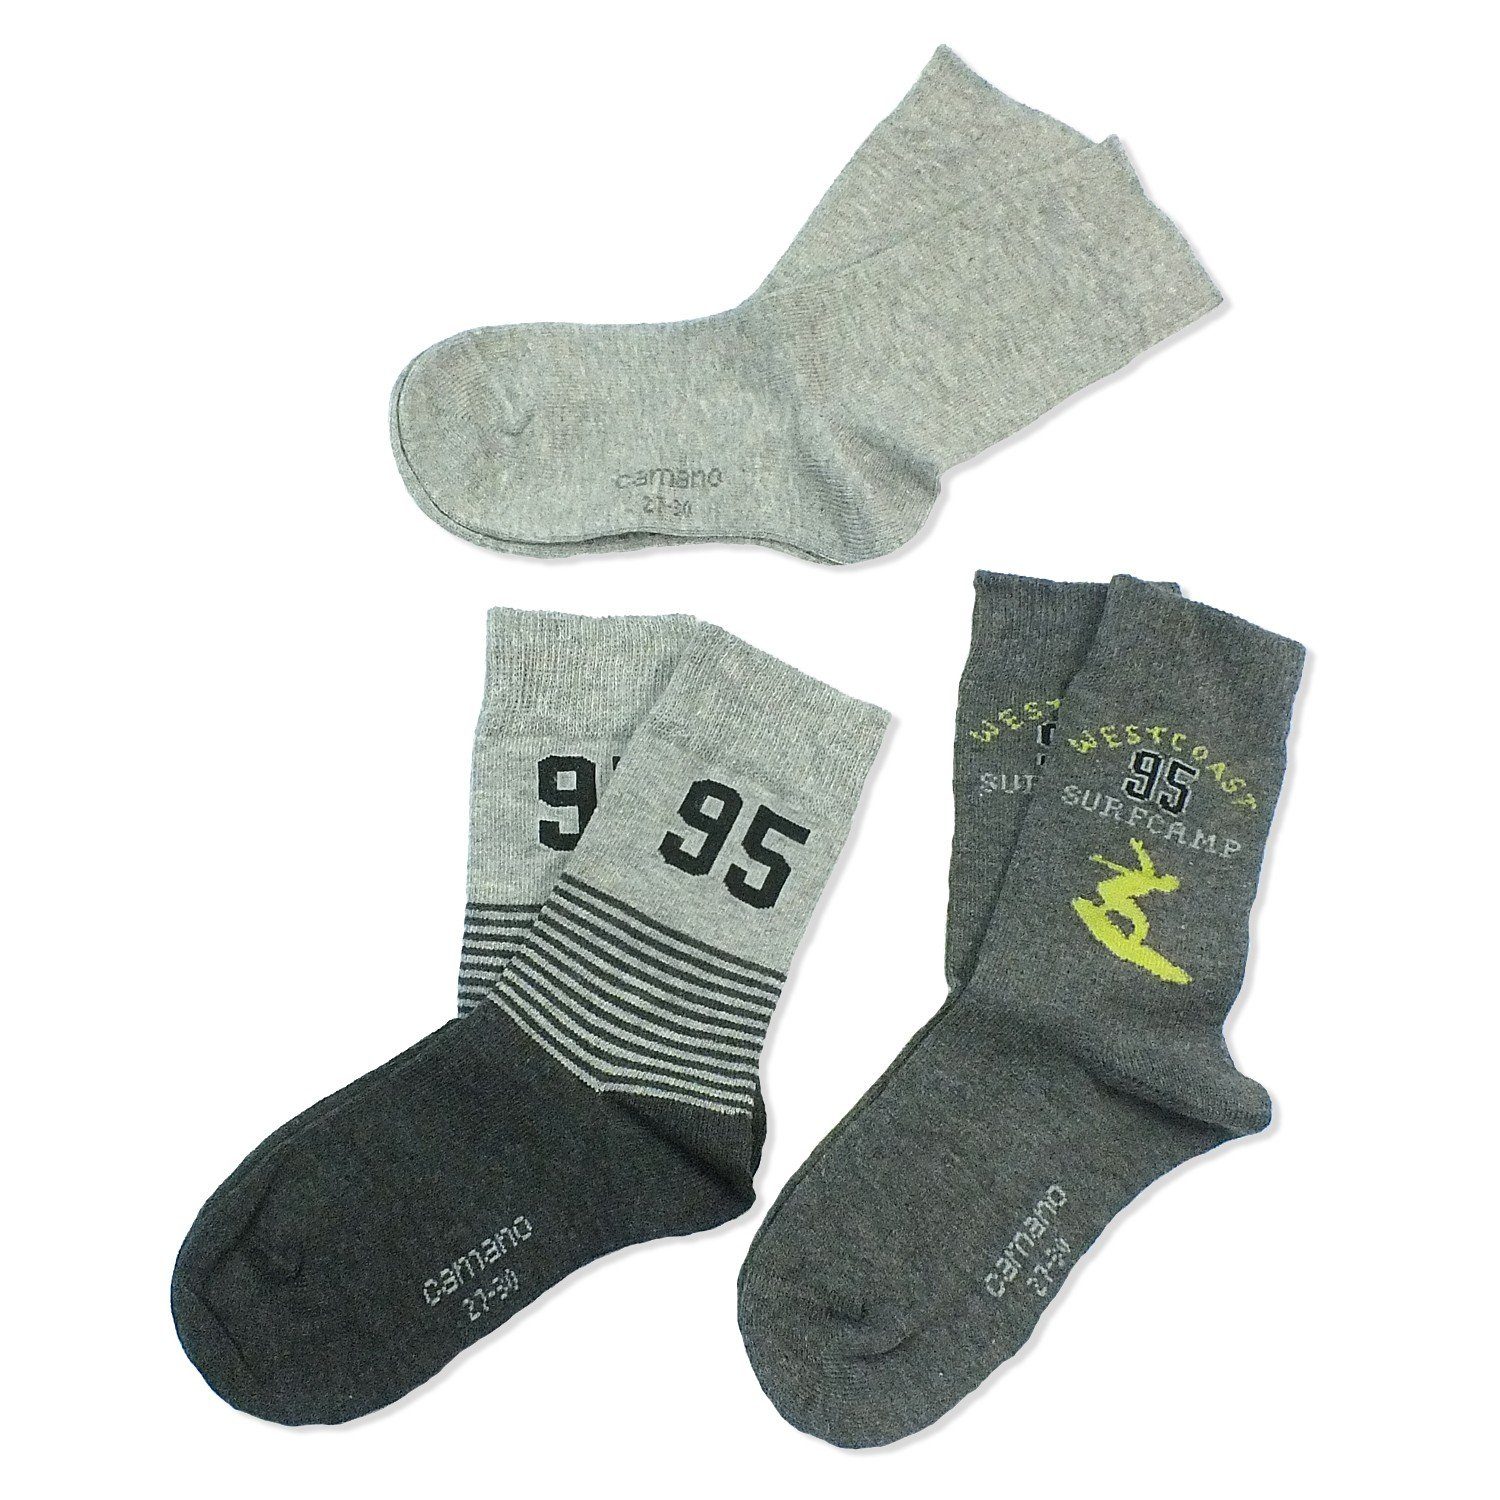 Socken, CA3841 Mädchen Langsocken Kindersocken comb mit Paar) & 10 3-Paar, Camano Kinder grey (Packung, Jungen Baumwolle, 3